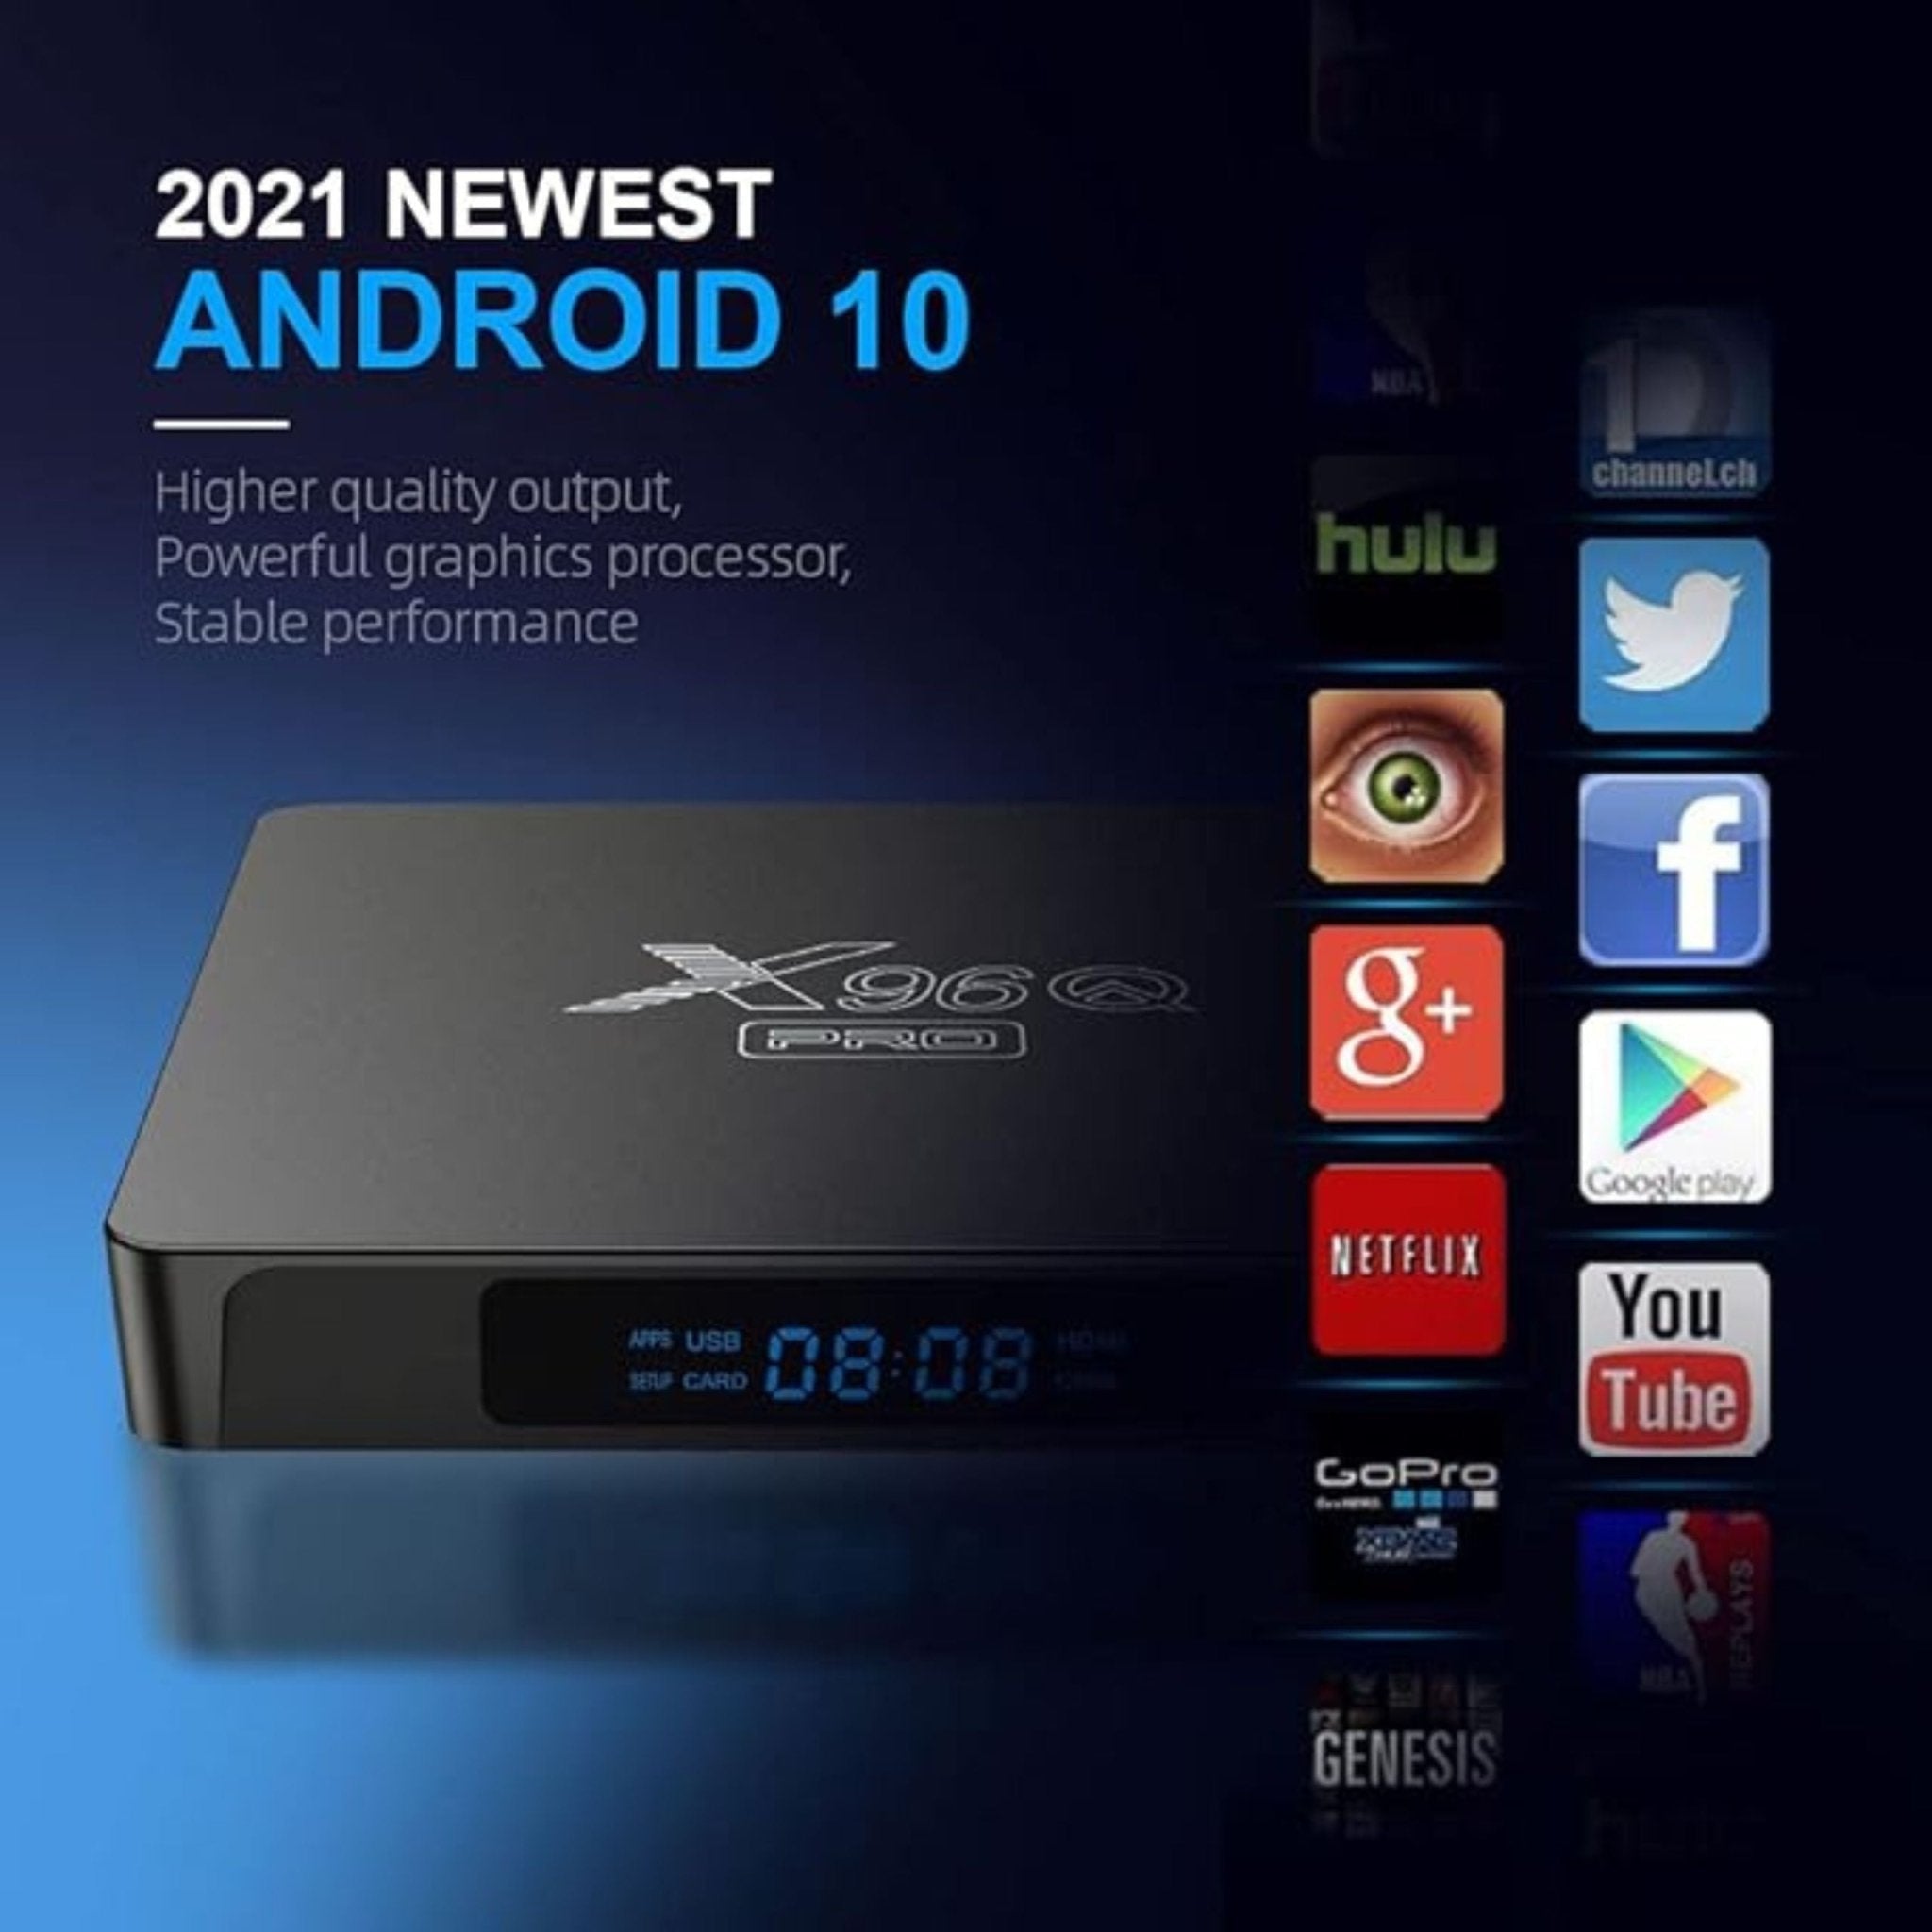 X96Q Pro 4K Android Tv Box - Black